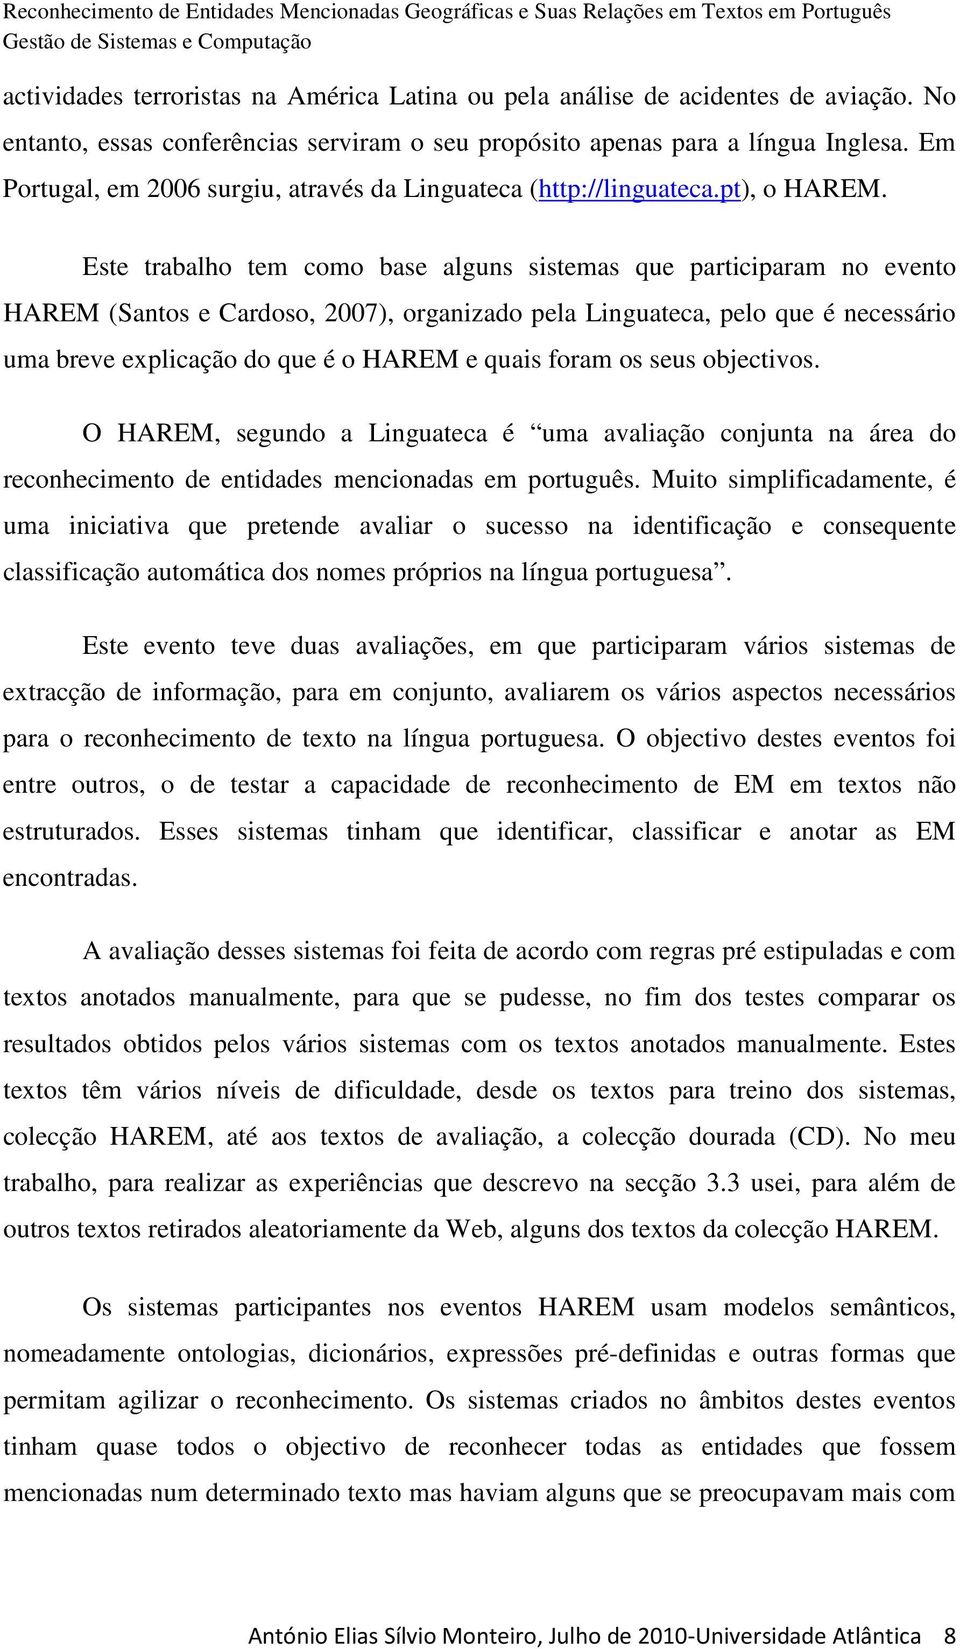 Este trabalho tem como base alguns sistemas que participaram no evento HAREM (Santos e Cardoso, 2007), organizado pela Linguateca, pelo que é necessário uma breve explicação do que é o HAREM e quais